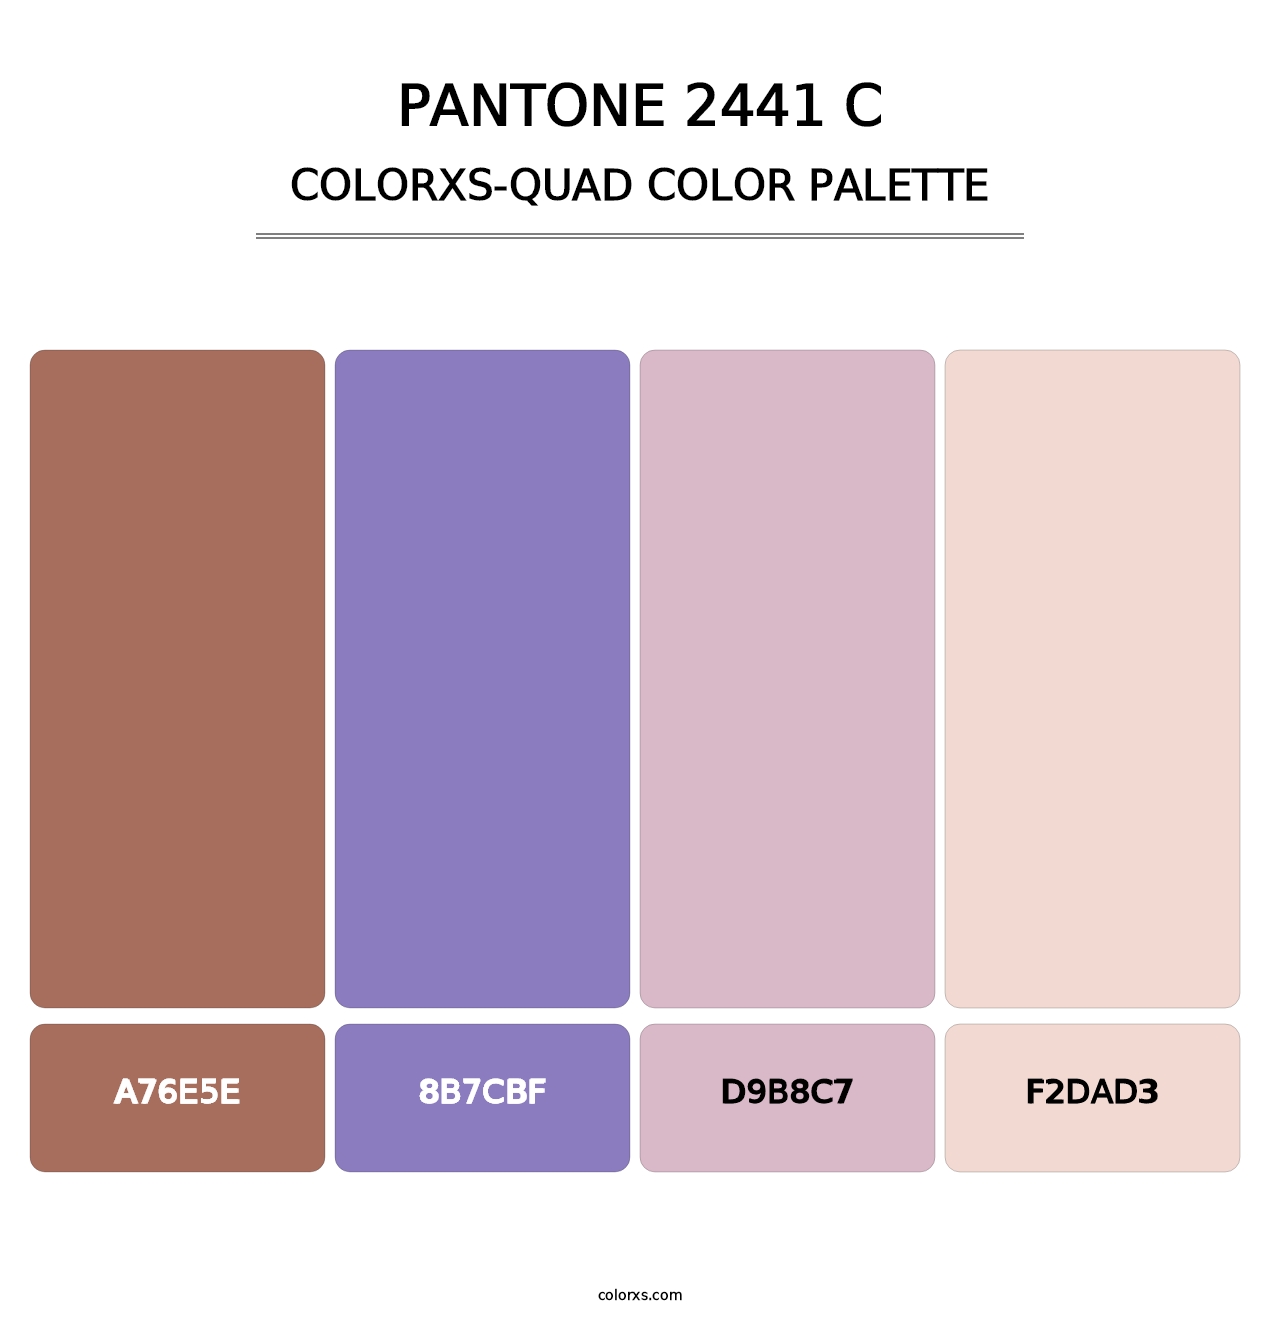 PANTONE 2441 C - Colorxs Quad Palette